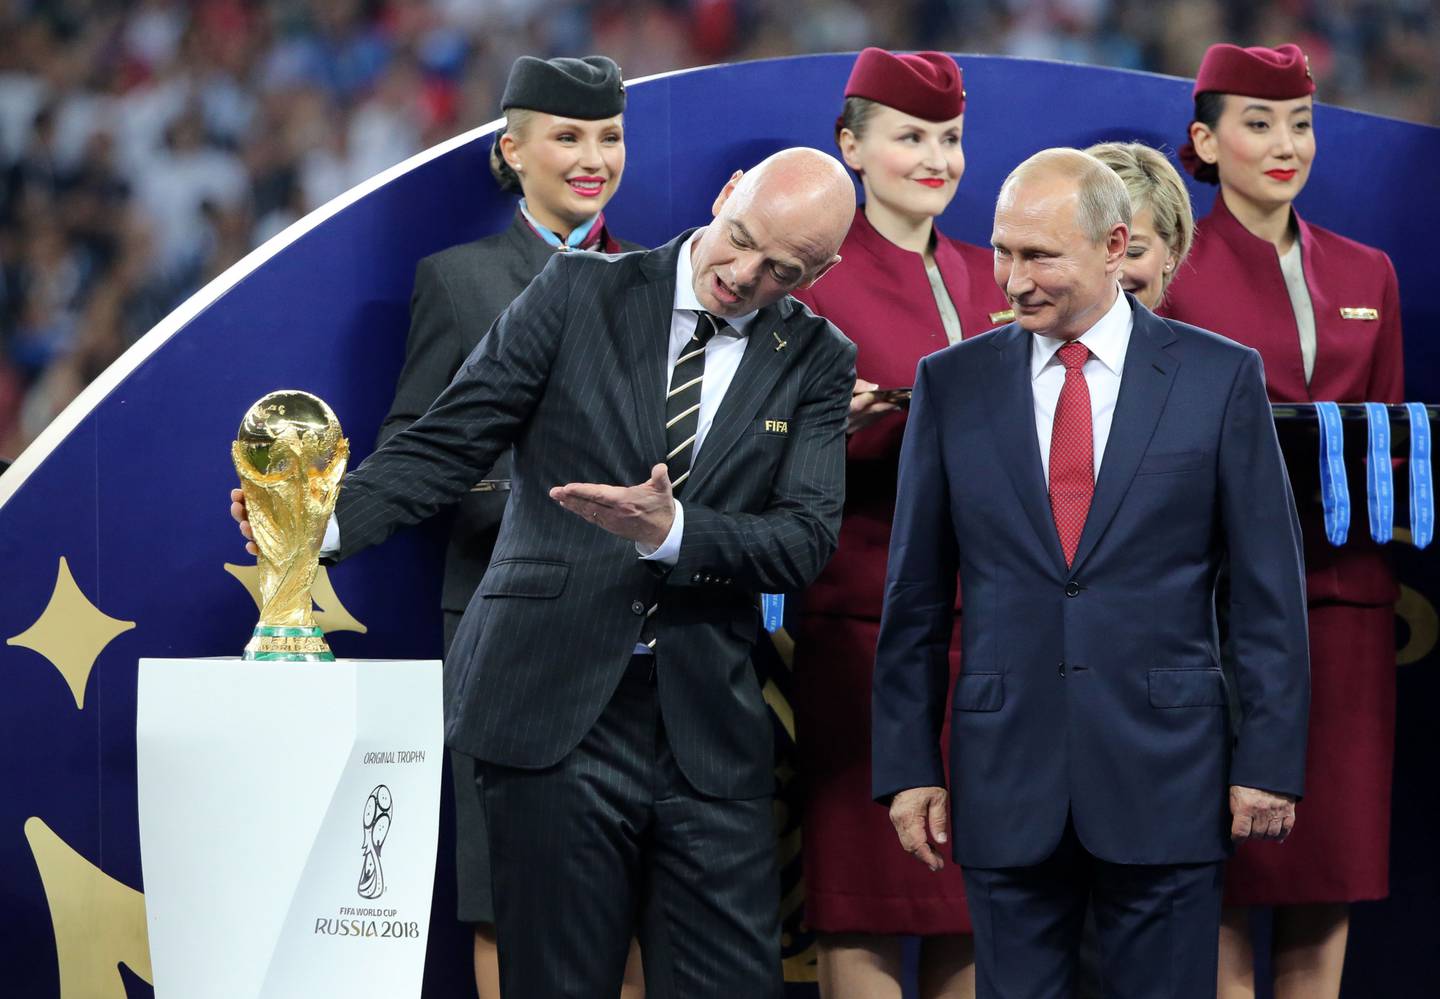 Gianni Infantino, presidente de la FIFA, izquierda, al lado de Vladimir Putin, presidente de Rusia, en la final del Mundial de Fútbol que se disputó en Rusia en 2018. Ahora, tras la guerra en Ucrania, la FIFA decidió suspender la participación de la selección rusa en sus campeonatos.